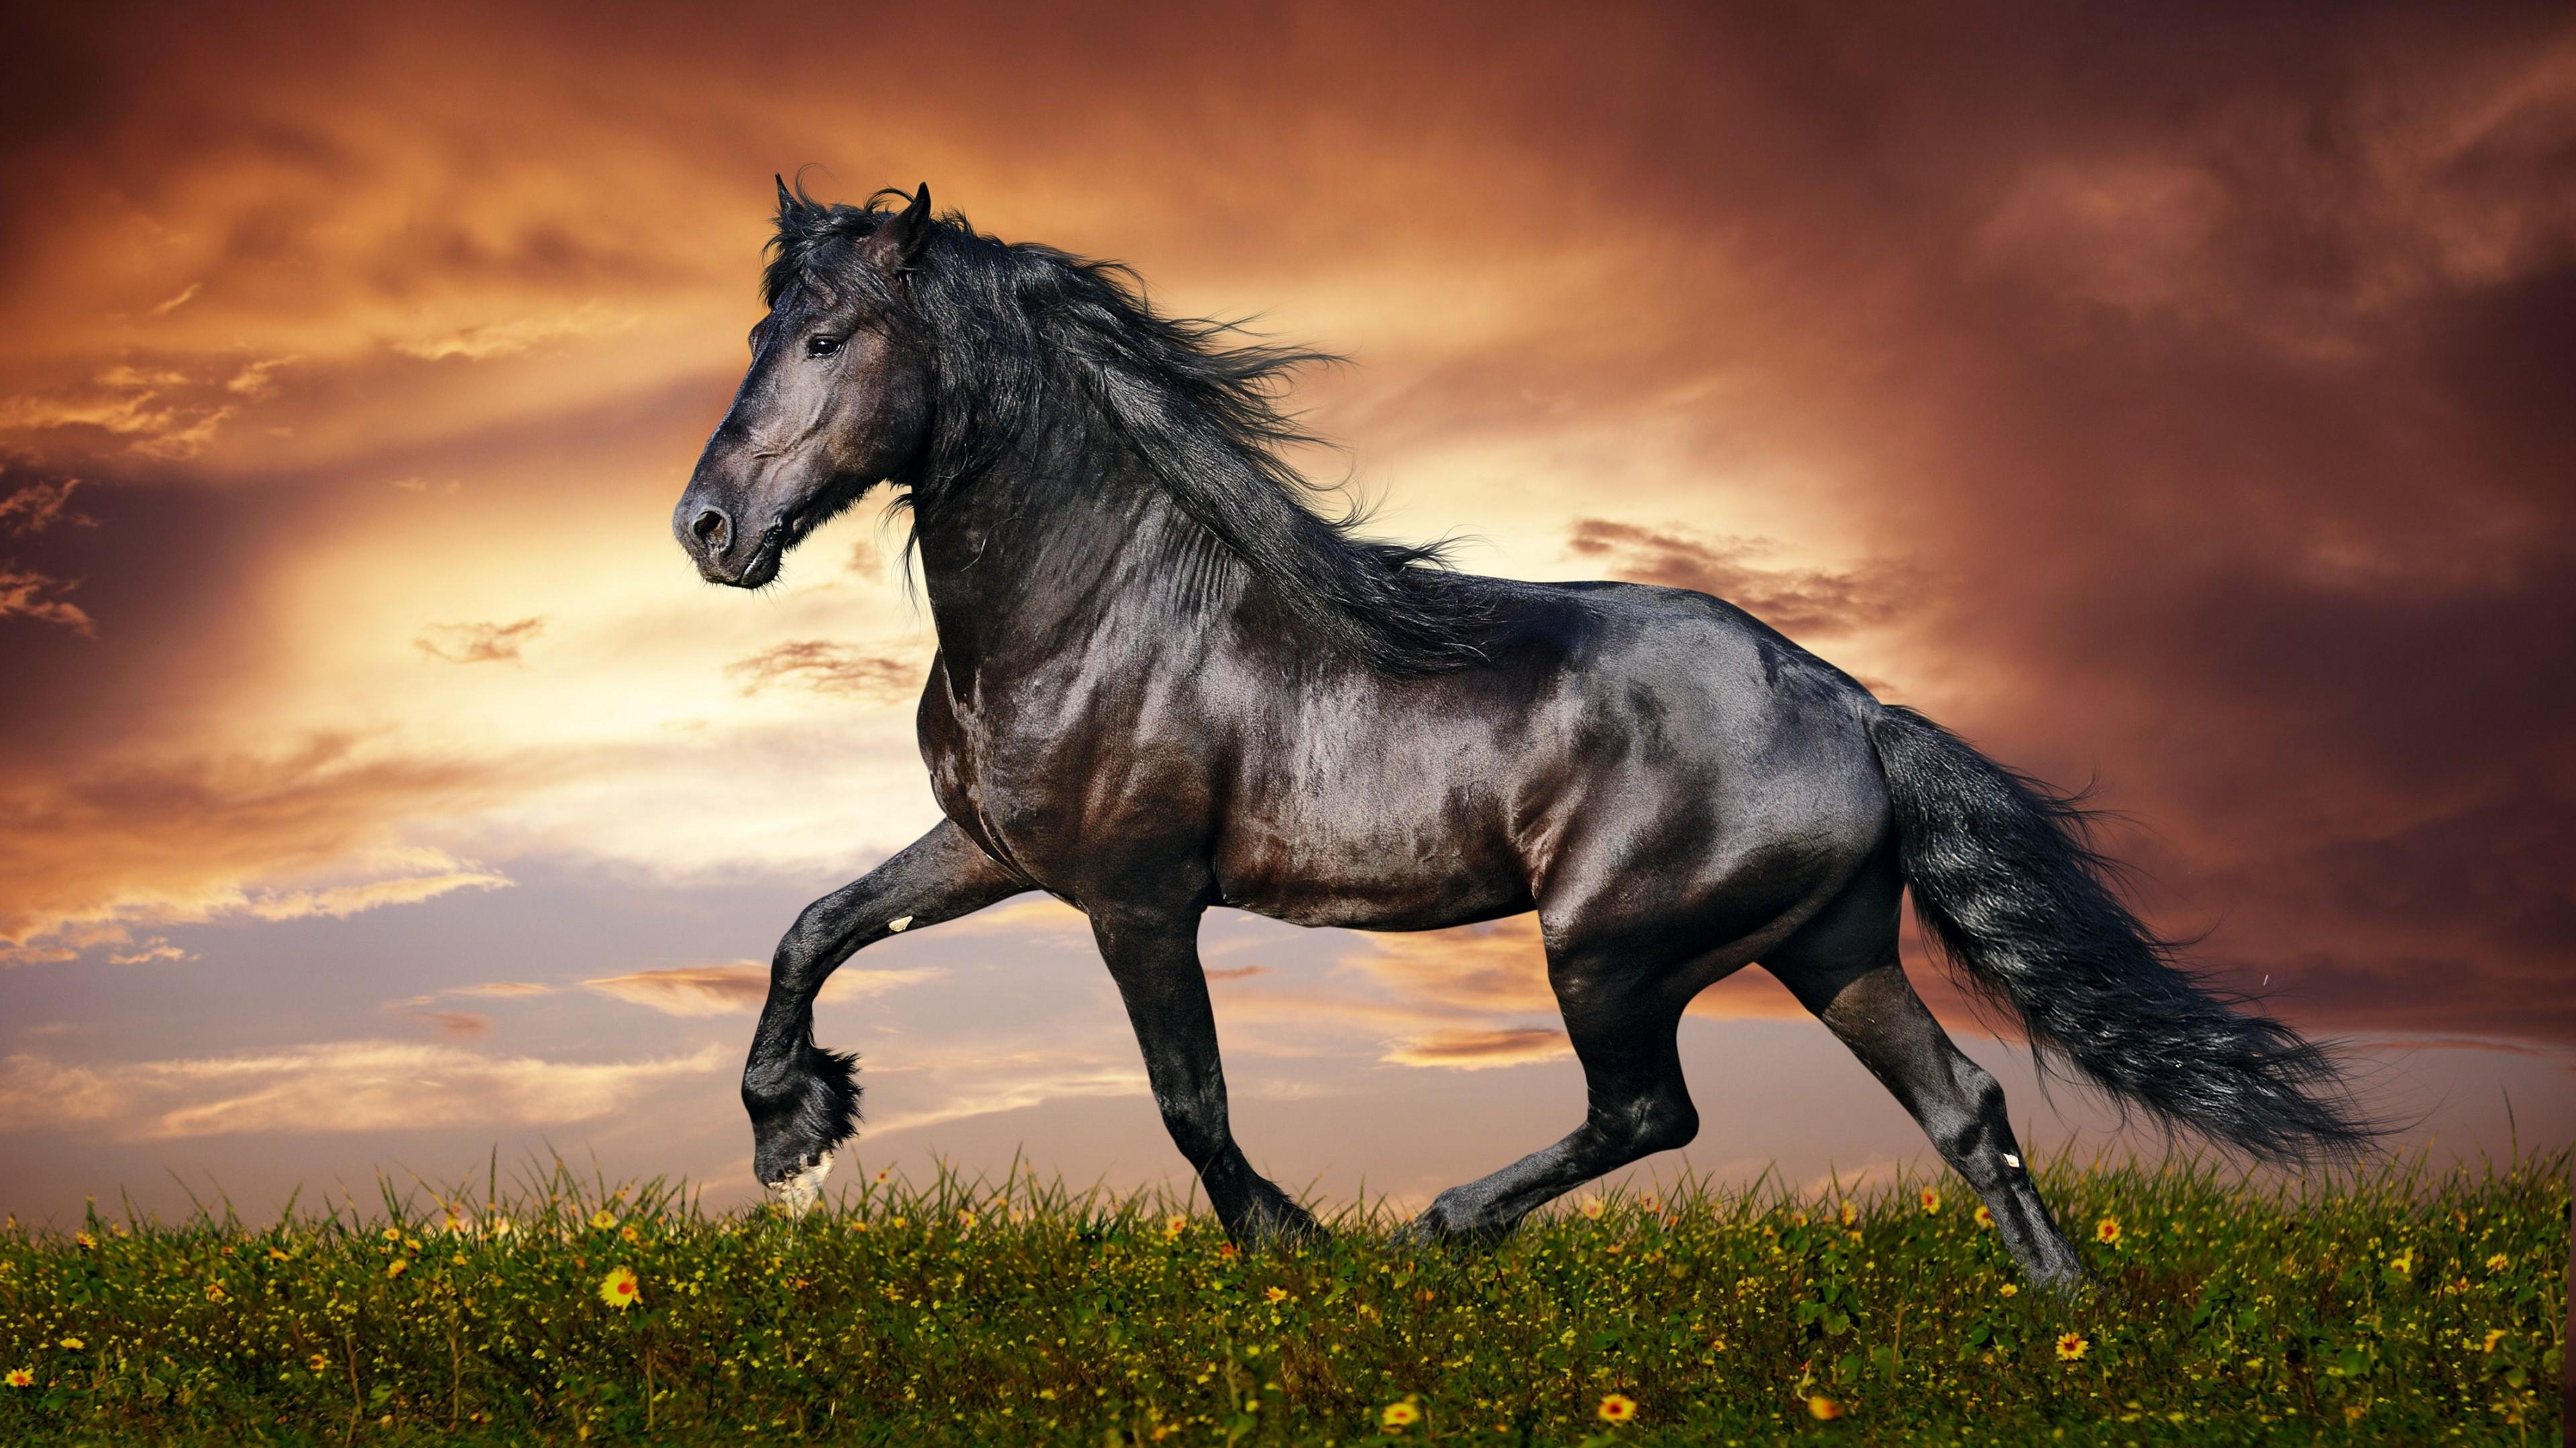 Wallpaper horse 5k 4k wallpaper hooves mane galloping black